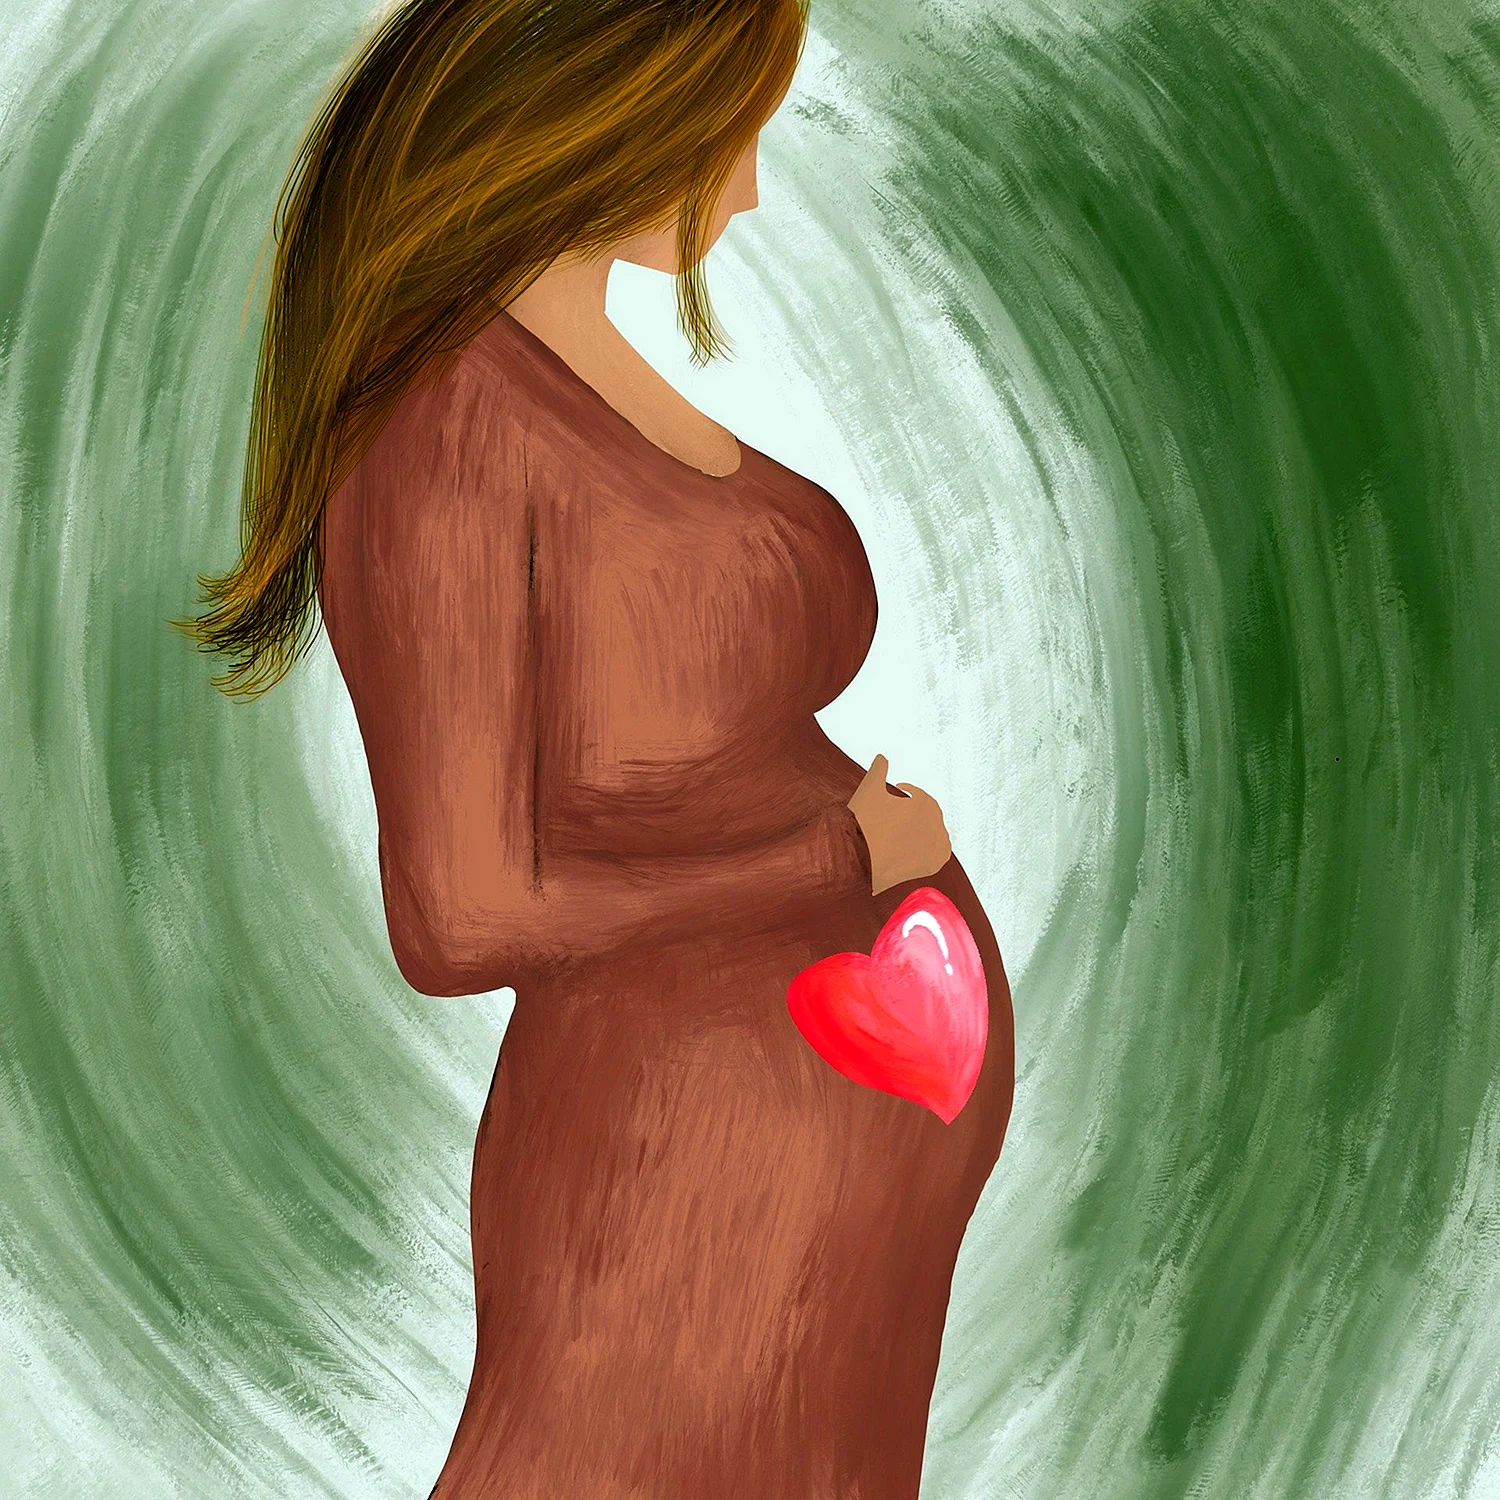 Как при помощи статуса тонко намекнуть на беременность? чтобы люди тупо гадали к чему такой статус.